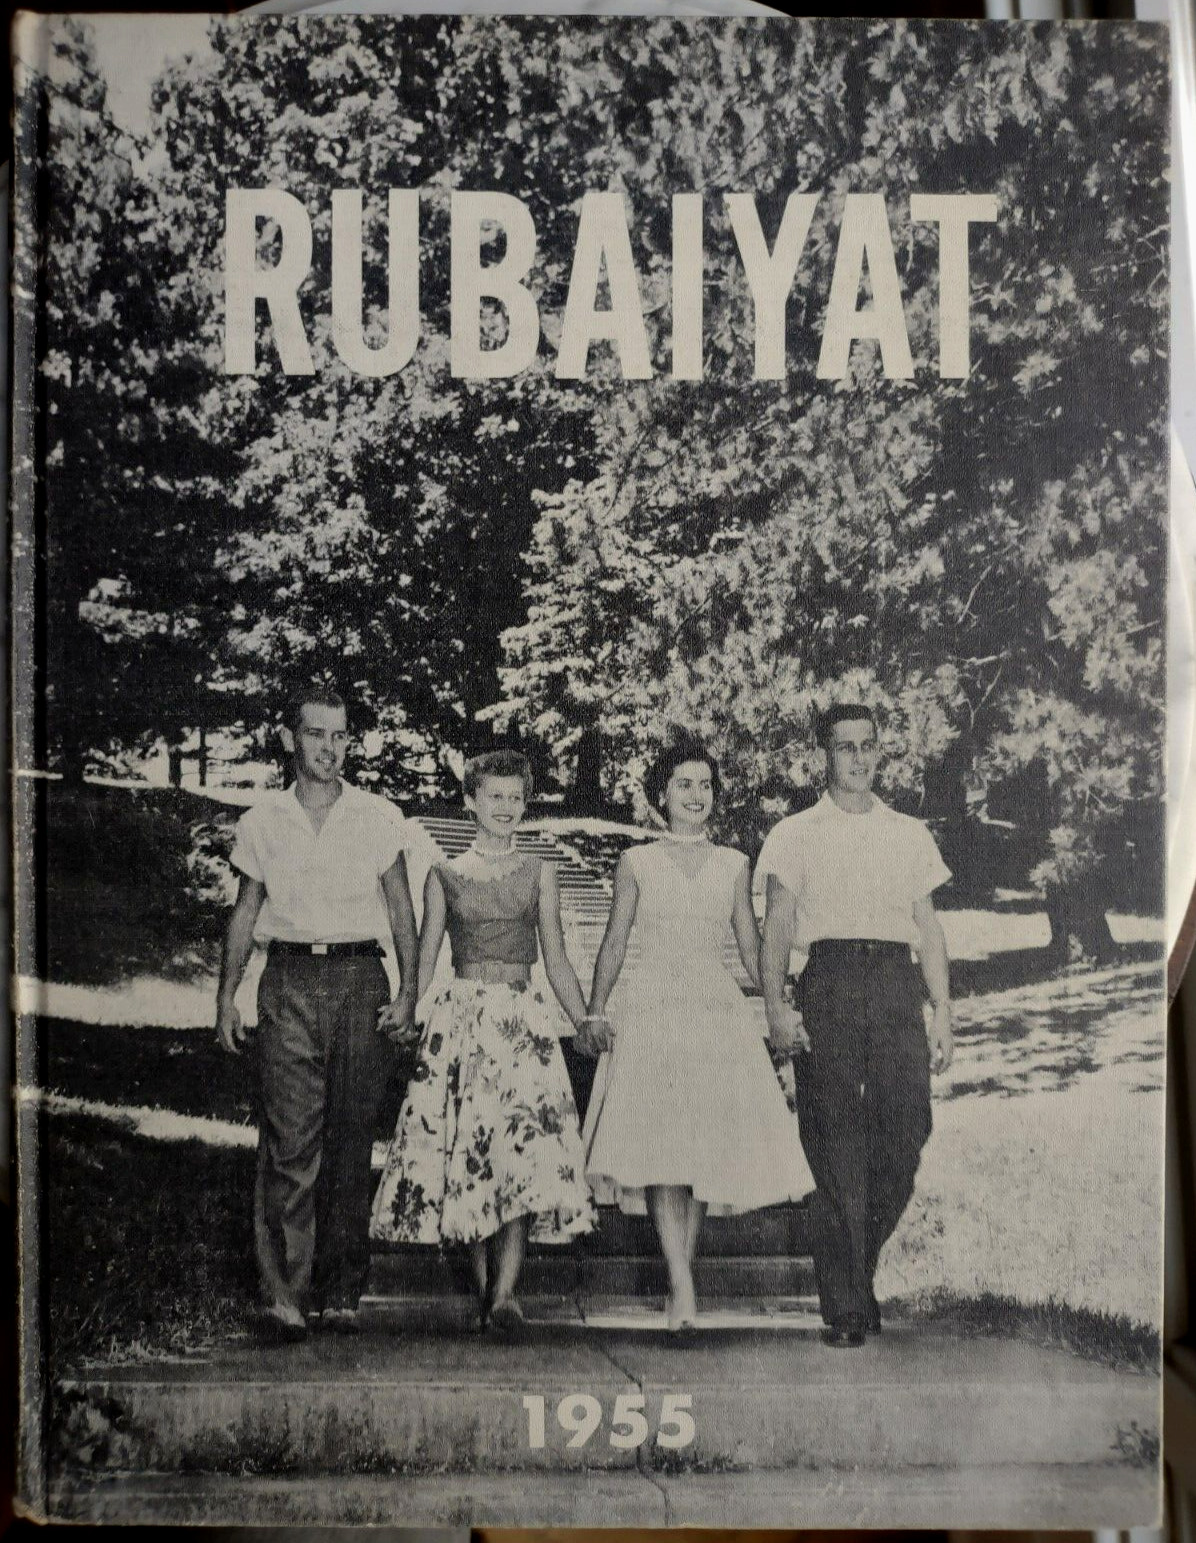 1955 Rochester NY Business Institute Yearbook - RUBAIYAT